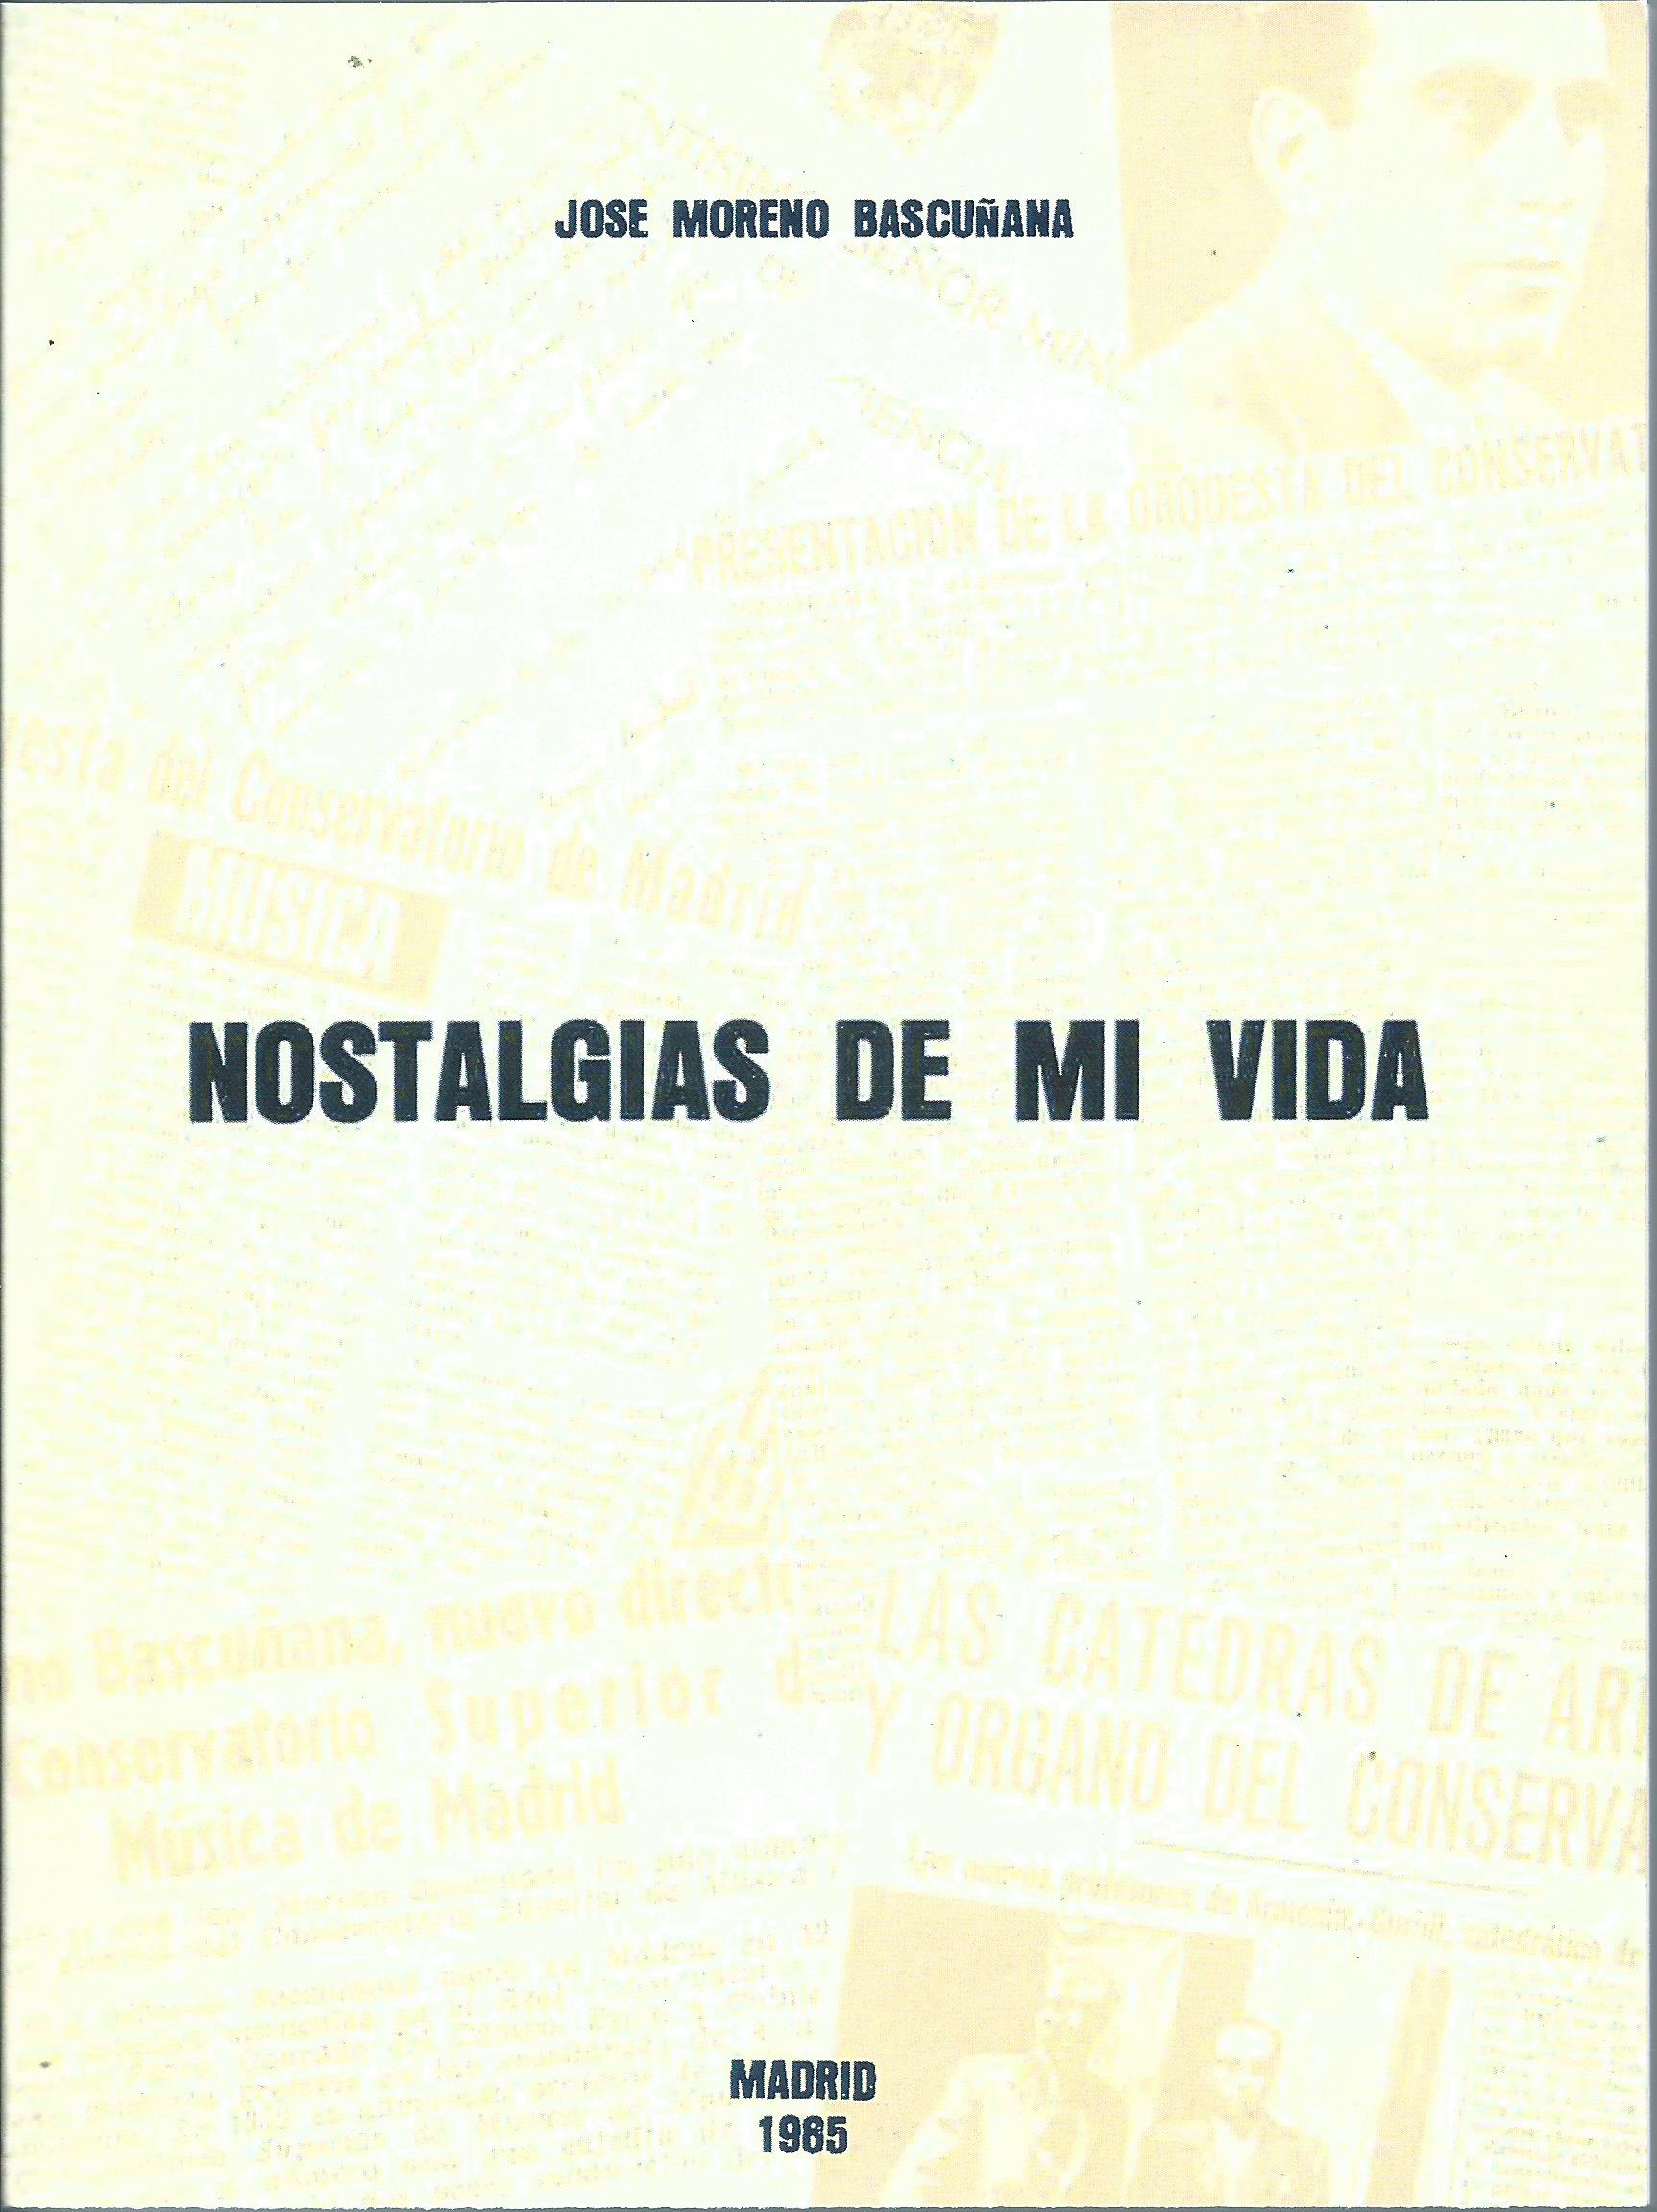 José Moreno Bascuñana: Nostalgias de mi vida (1985)